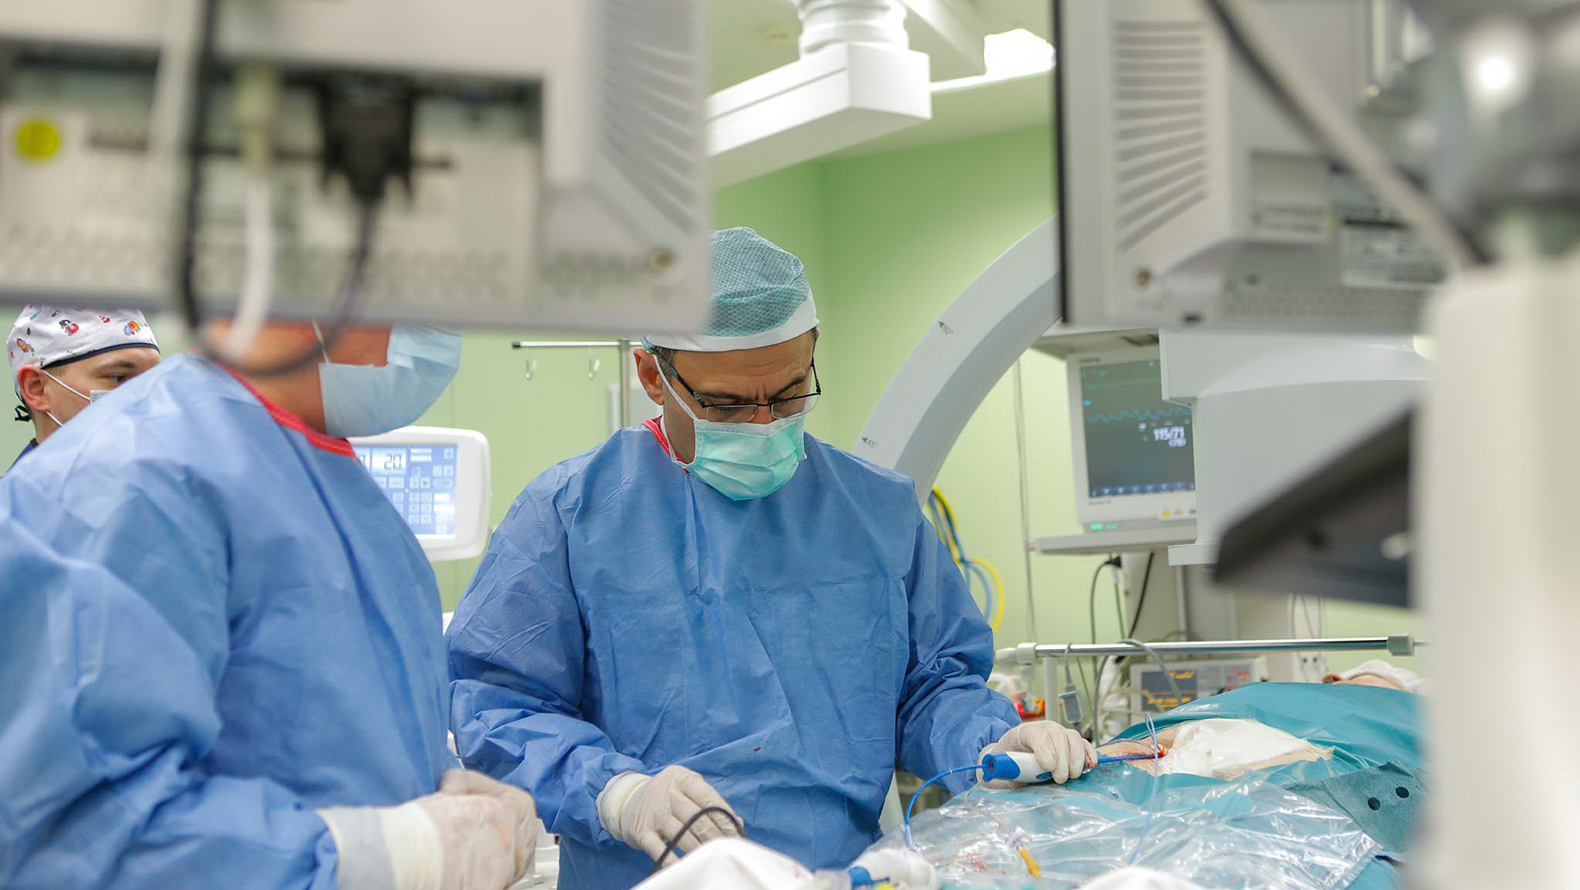 
                     Впервые за 4 года в больнице Белгородской области сделали пересадку сердца  
                